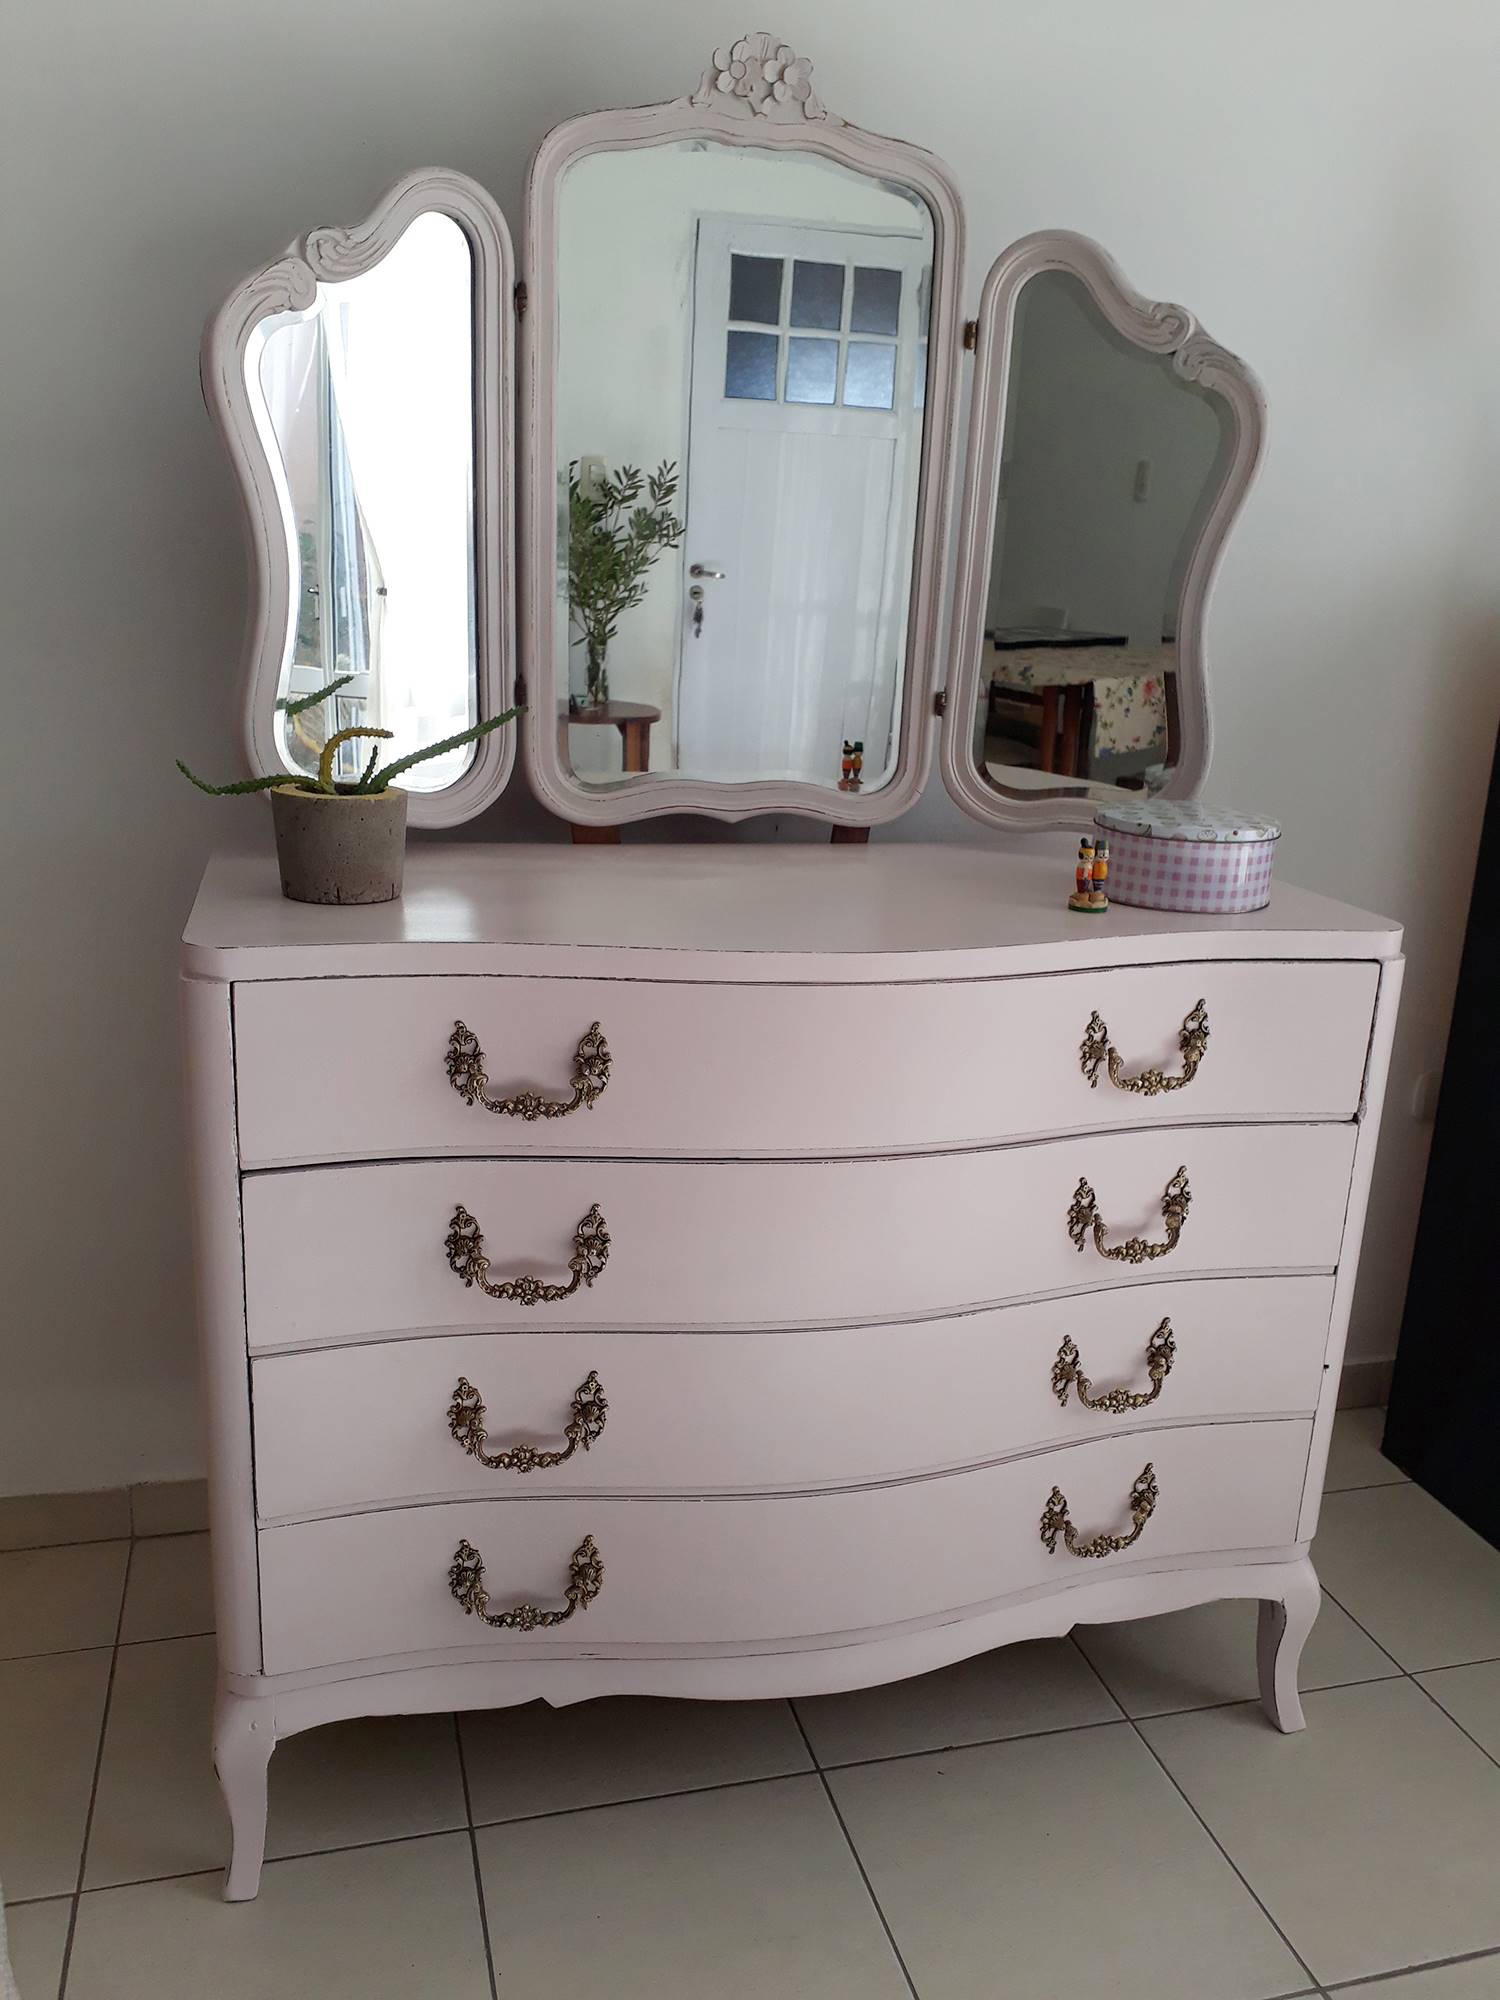 Cómoda restaurada de estilo francés pintada en rosa con espejo de tocador